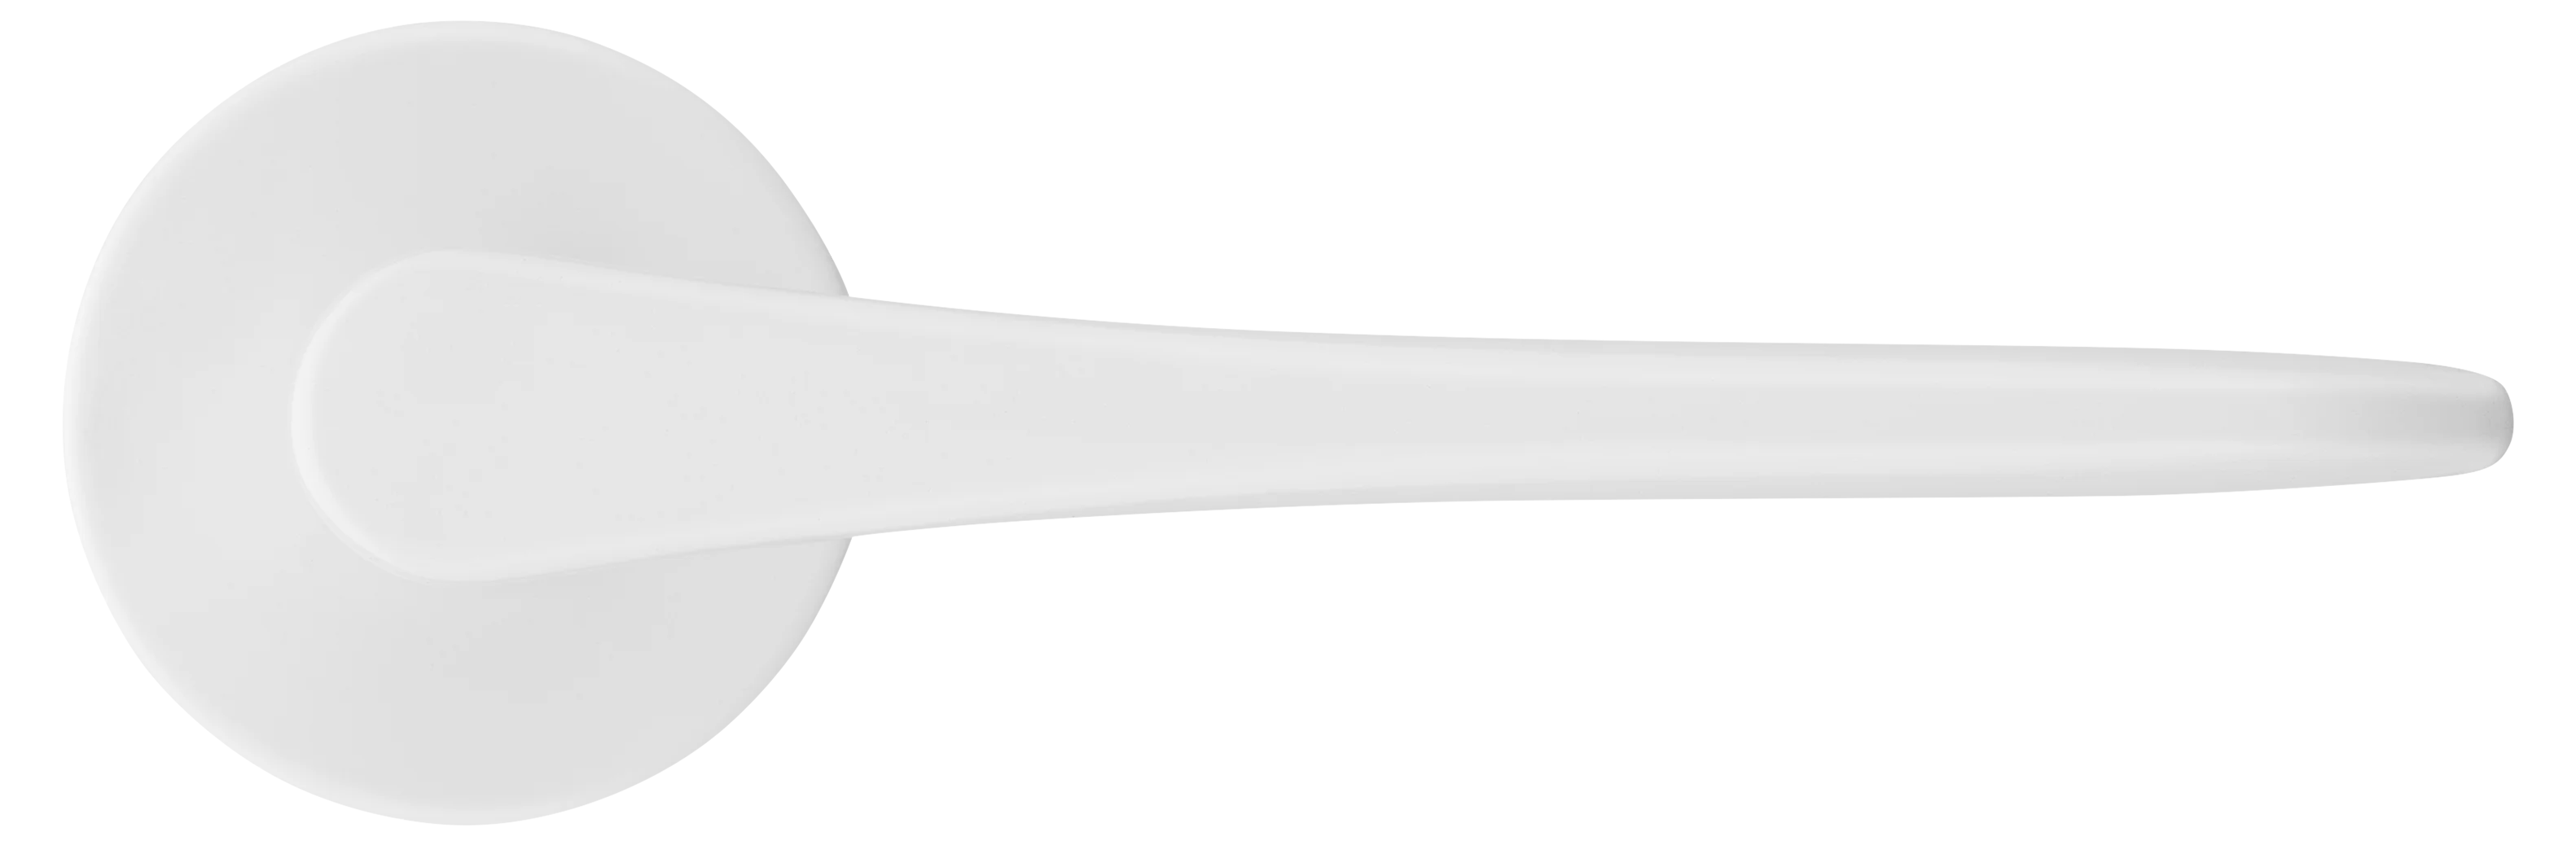 AULA R5 BIA, ручка дверная на розетке 7мм, цвет -  белый фото купить в Кемерово